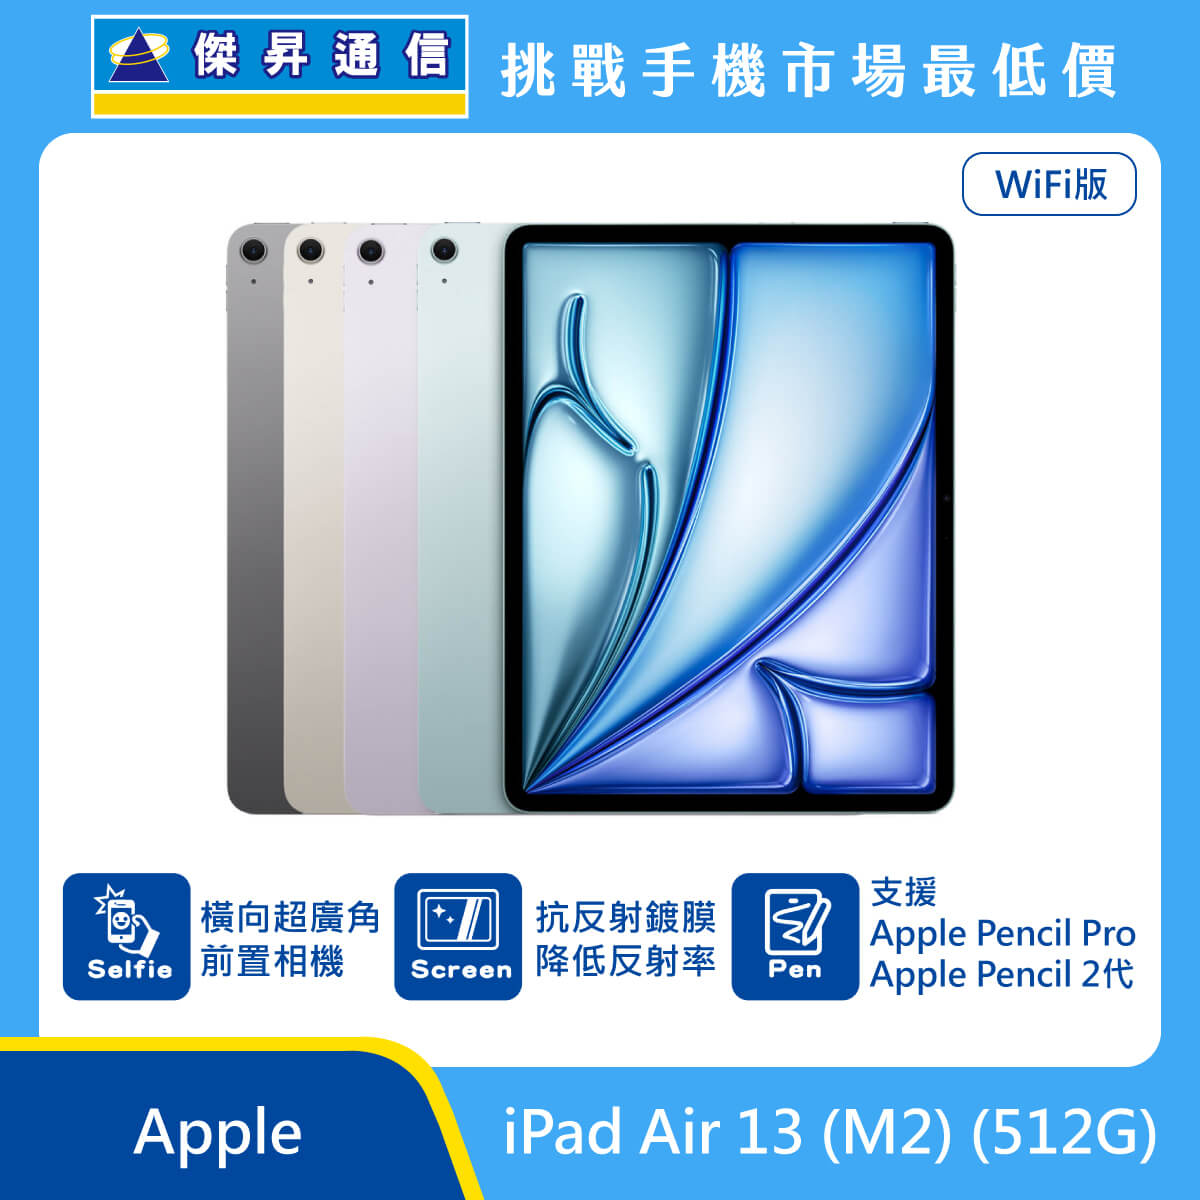 Apple 平板 iPad Air 13 M2 Wi-Fi (512G) 即將上市